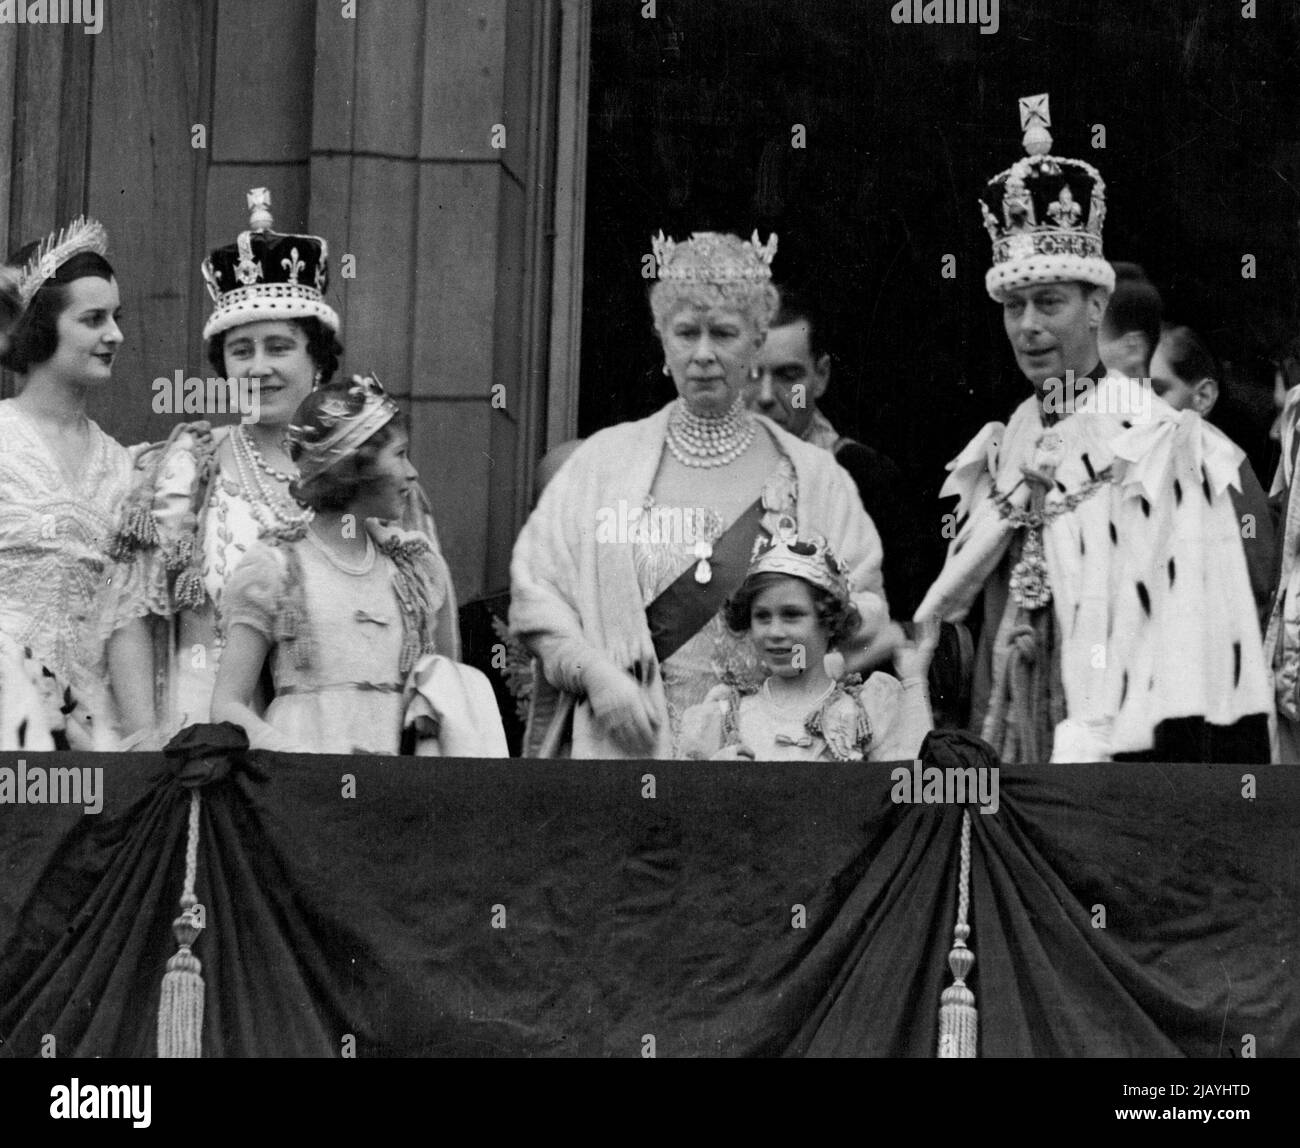 König George VI., der nach der Krönung die Krone des Kaiserlichen Staates trug, auf dem Balkon des Buckingham Palace, wo er den Jubel der riesigen Menschenmassen annahm, die sich versammelt hatten, um den neu gekrönten Souverän zu loben. Mit ihm sind Königin Elizabeth, Königin Mary, Prinzessin Elizabeth und Prinzessin Margaret. Die Prinzessinnen tragen ihre Krönungen, die sie nach der Krönung der Königin mit den Peeresses anziehen. 3. Juni 1953. Stockfoto